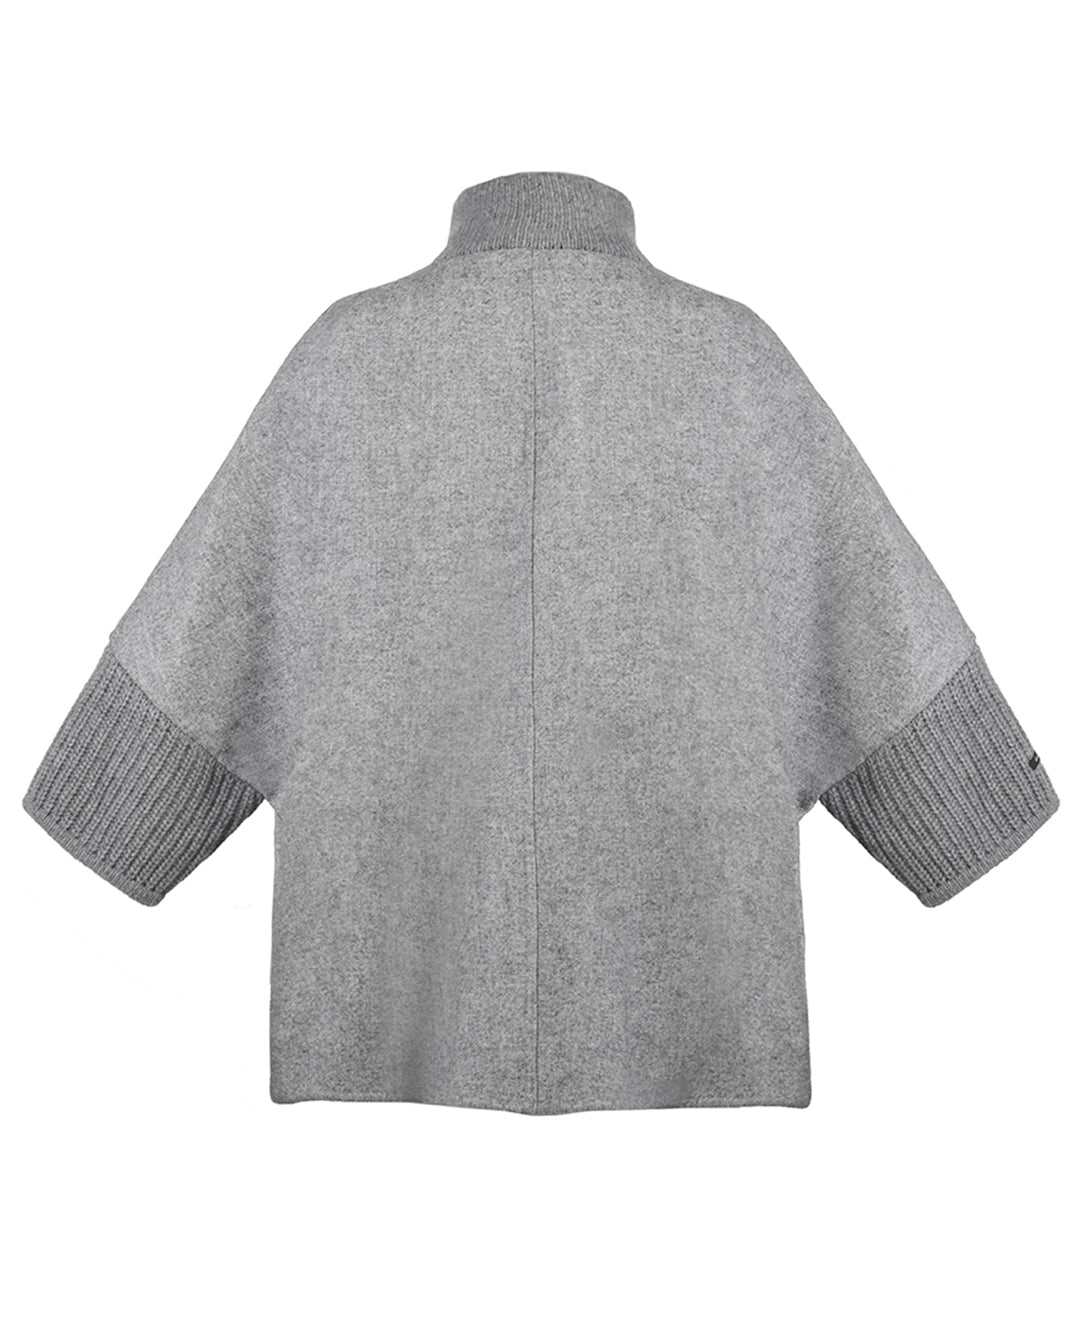 Capa de lana y cashmere con tejido de punto en mangas y aplicación de borrego en bolsas